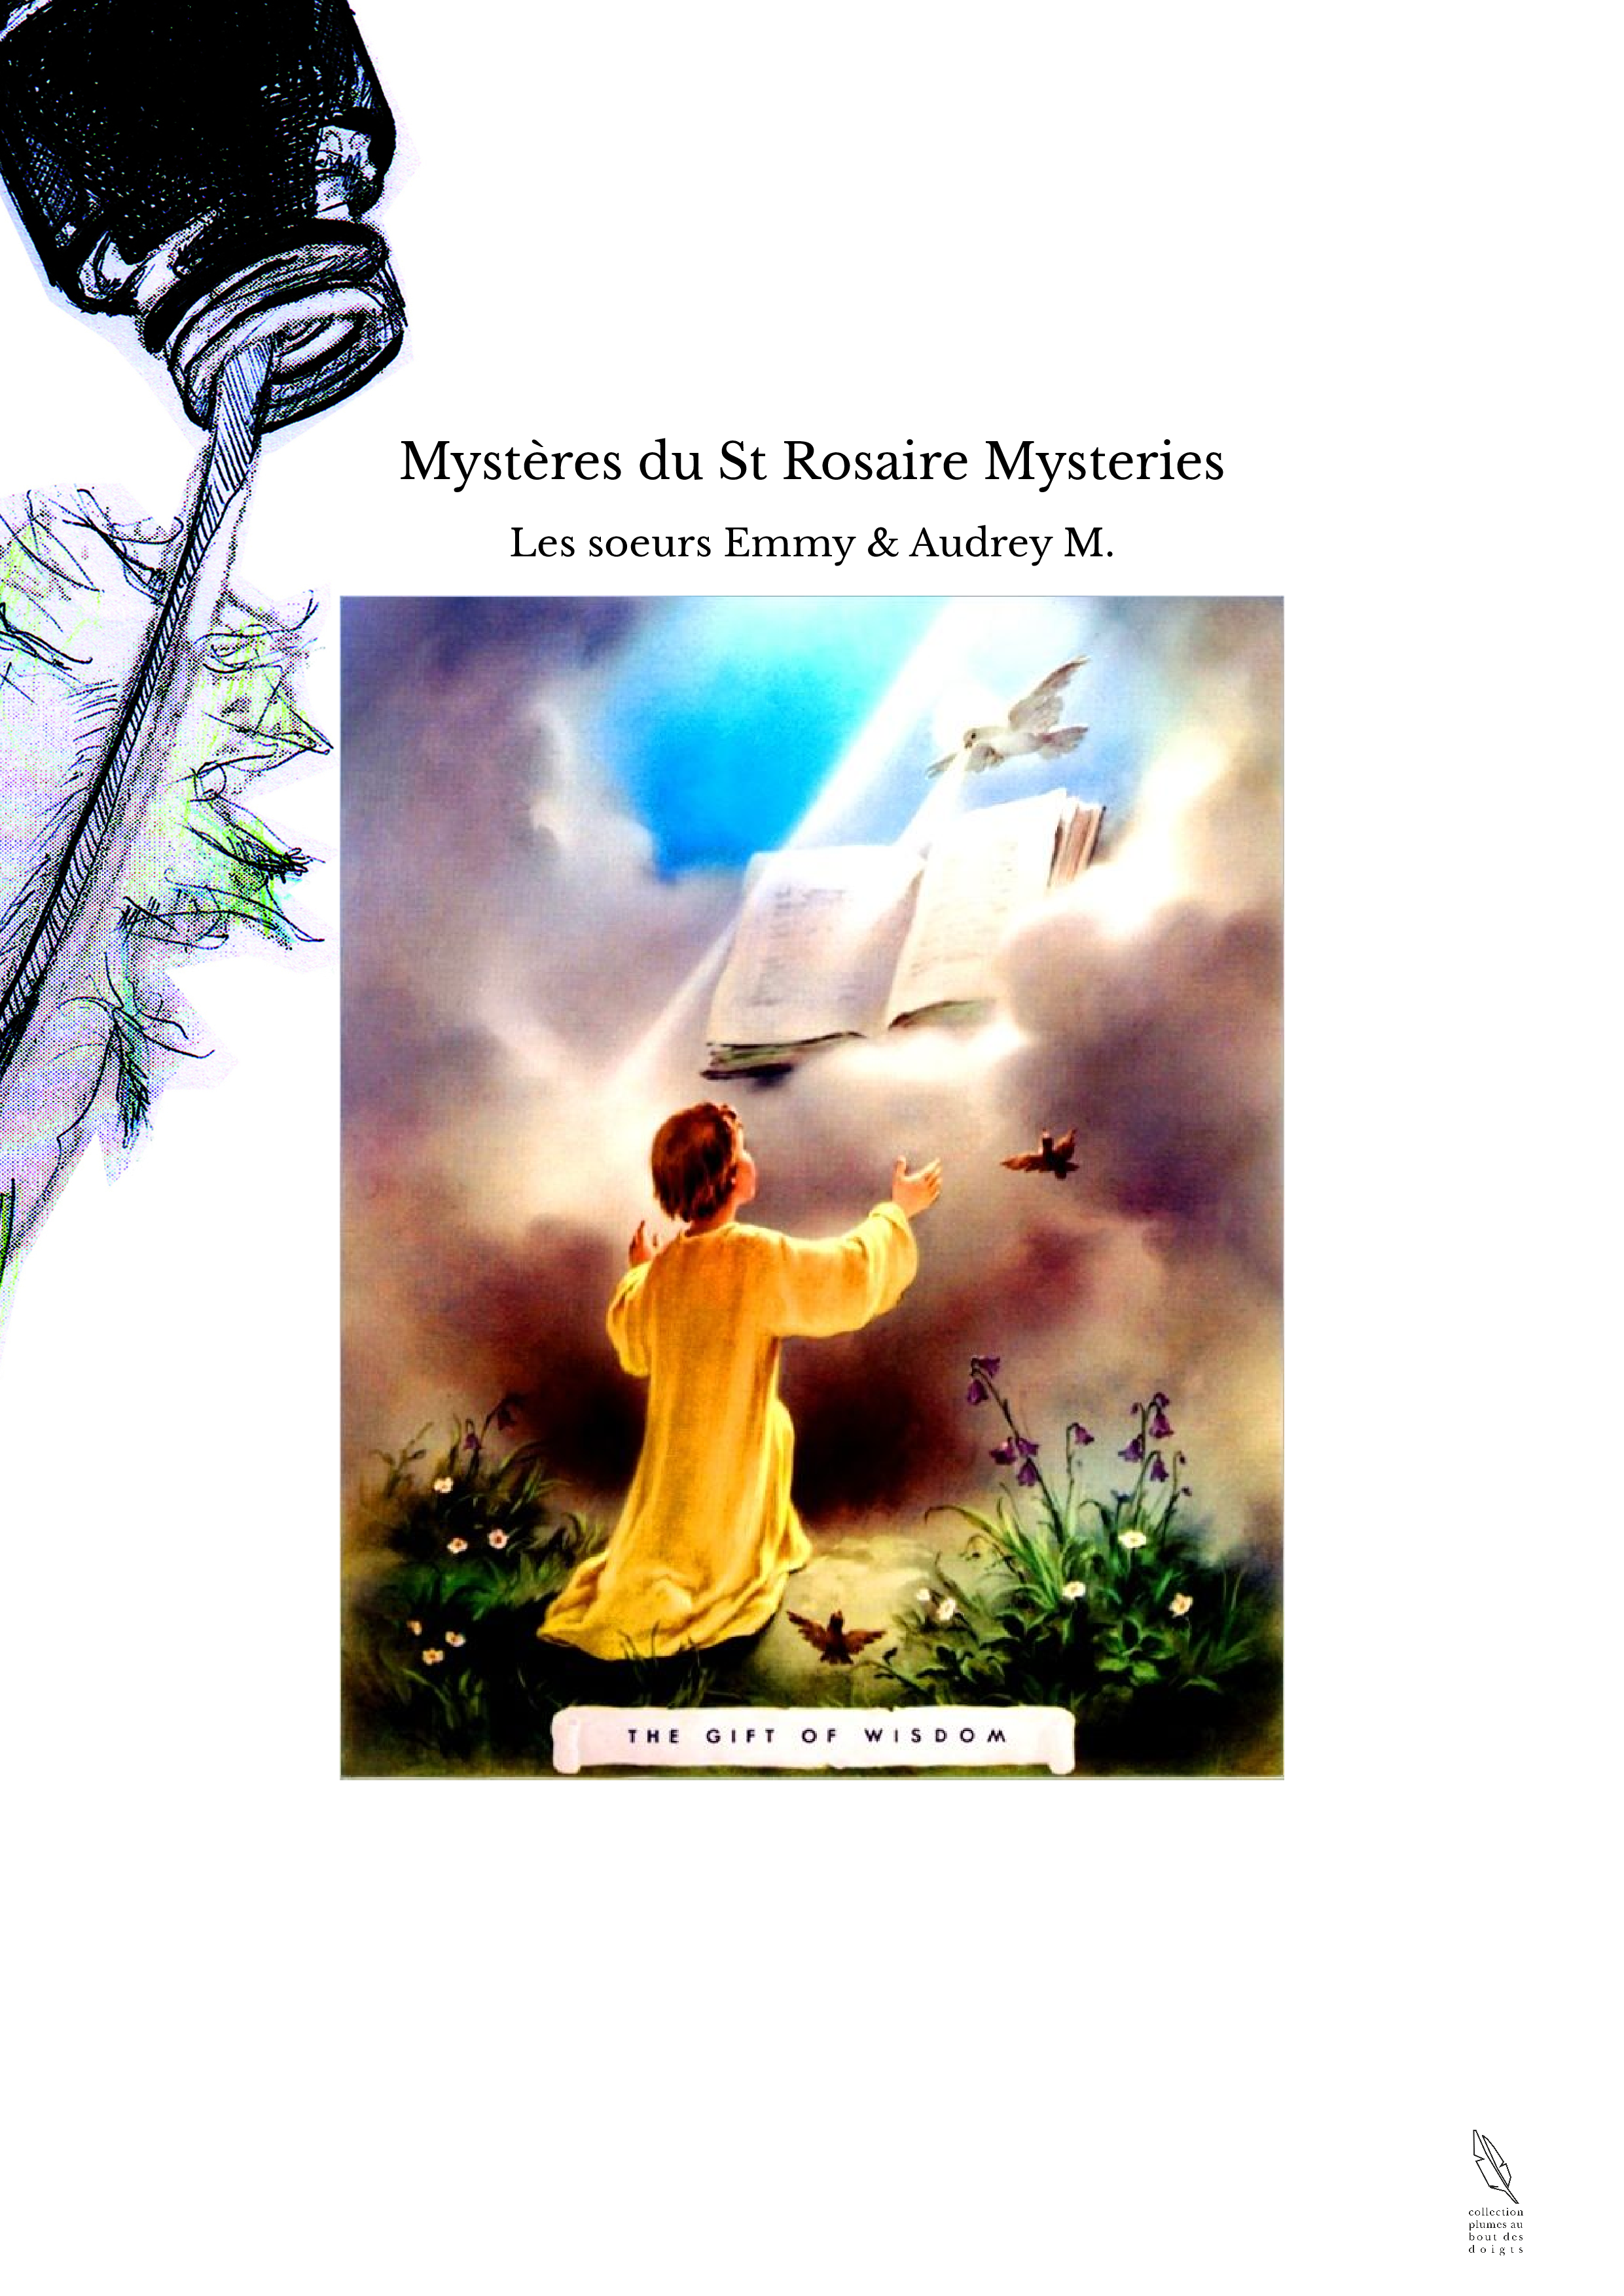 Mystères du St Rosaire Mysteries